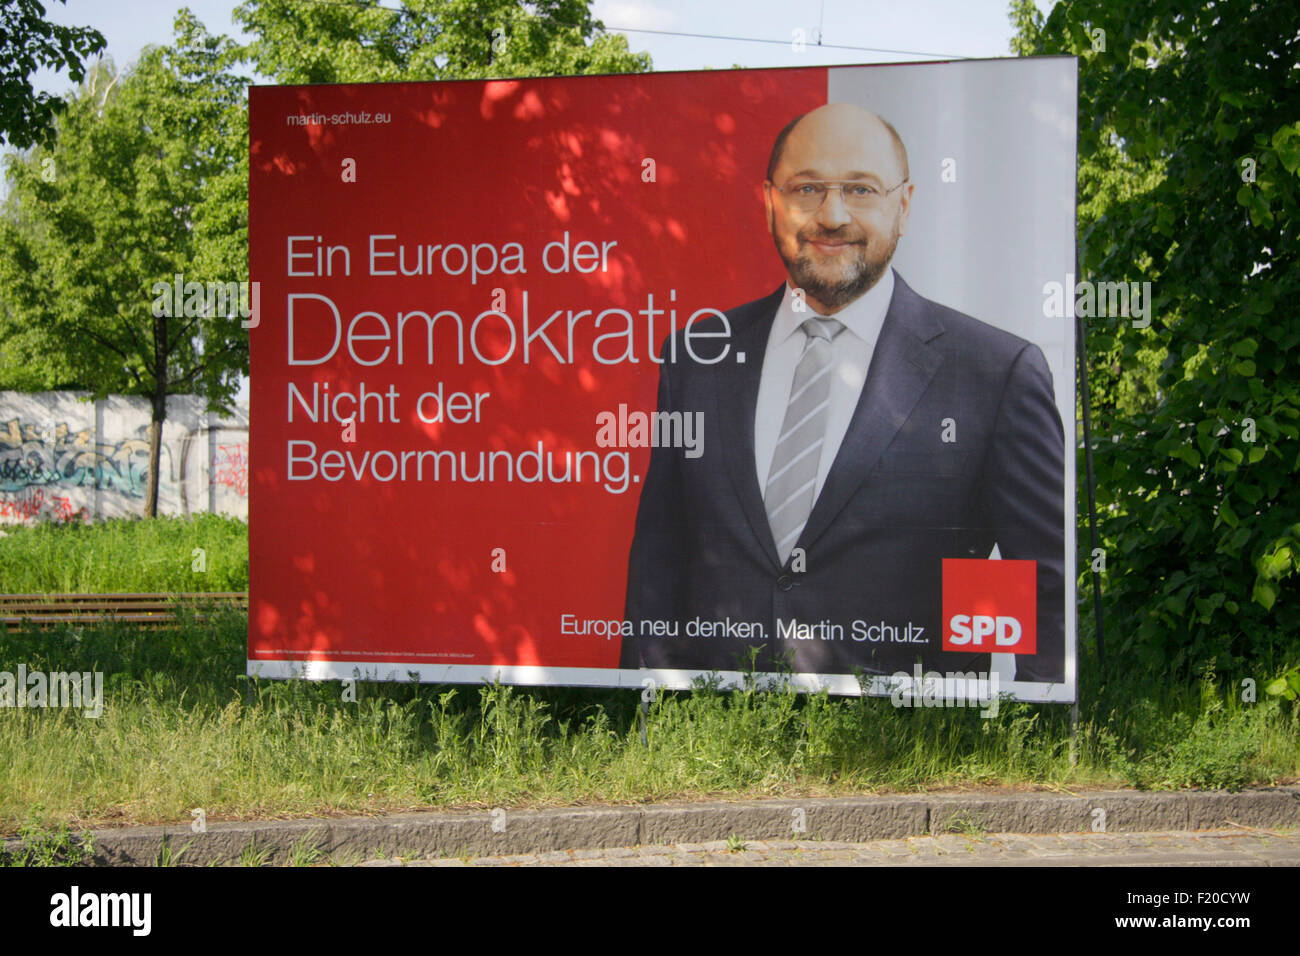 Martin Schulz, SPD - Wahlplakate zur Europawahl anstehenden, Berlino. Foto Stock